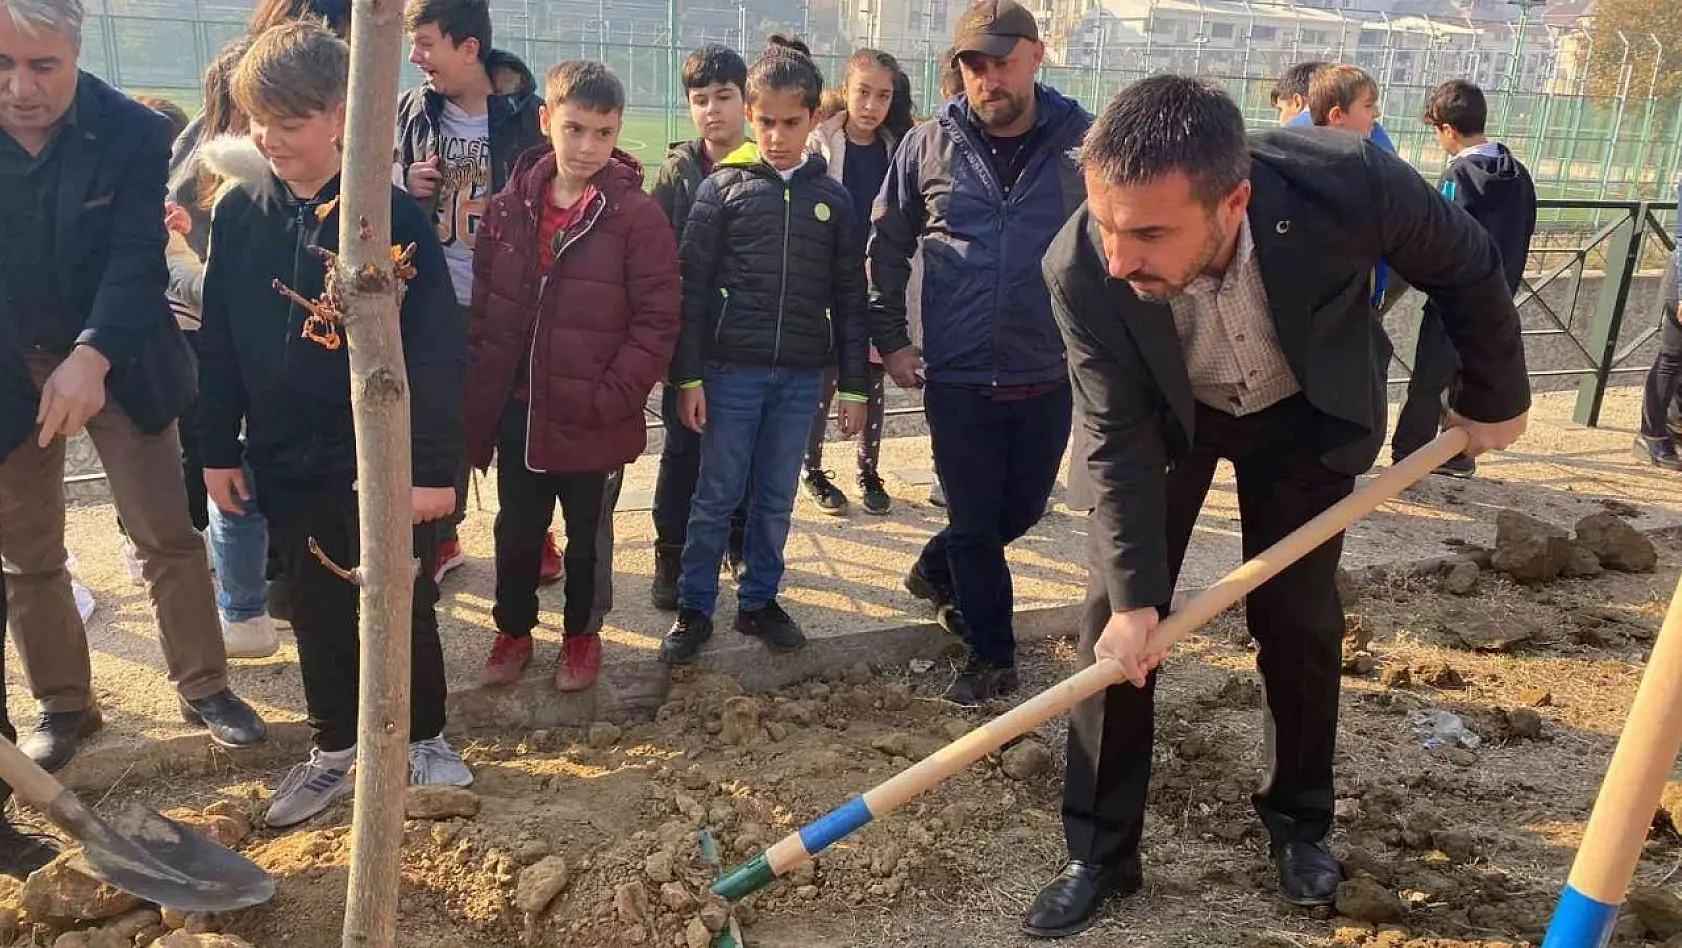 Kestel Belediye Başkanı Önder Tanır, çocuklarla birlikte ağaç dikti